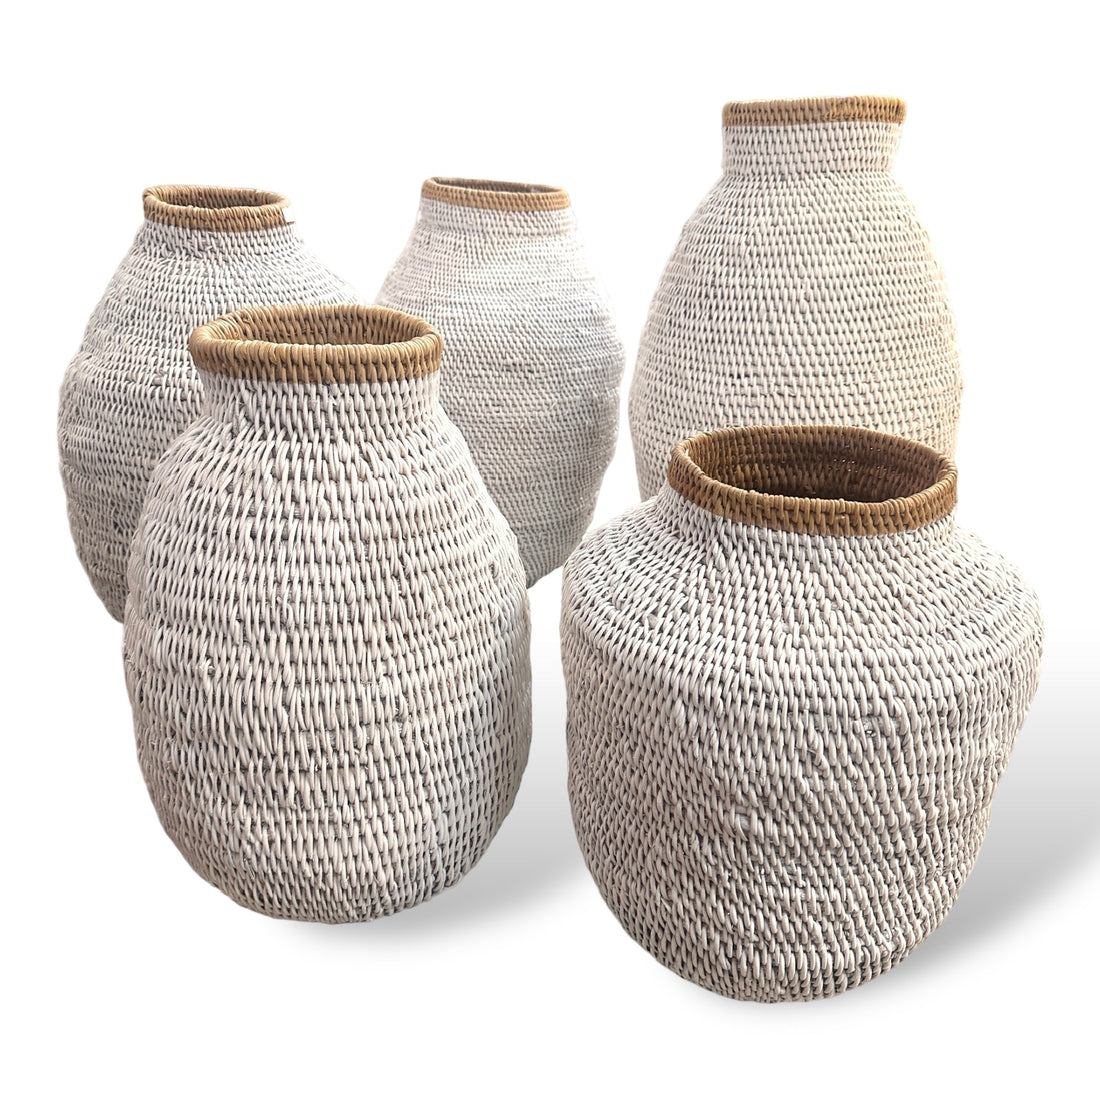 Buhera Baskets - White NEW